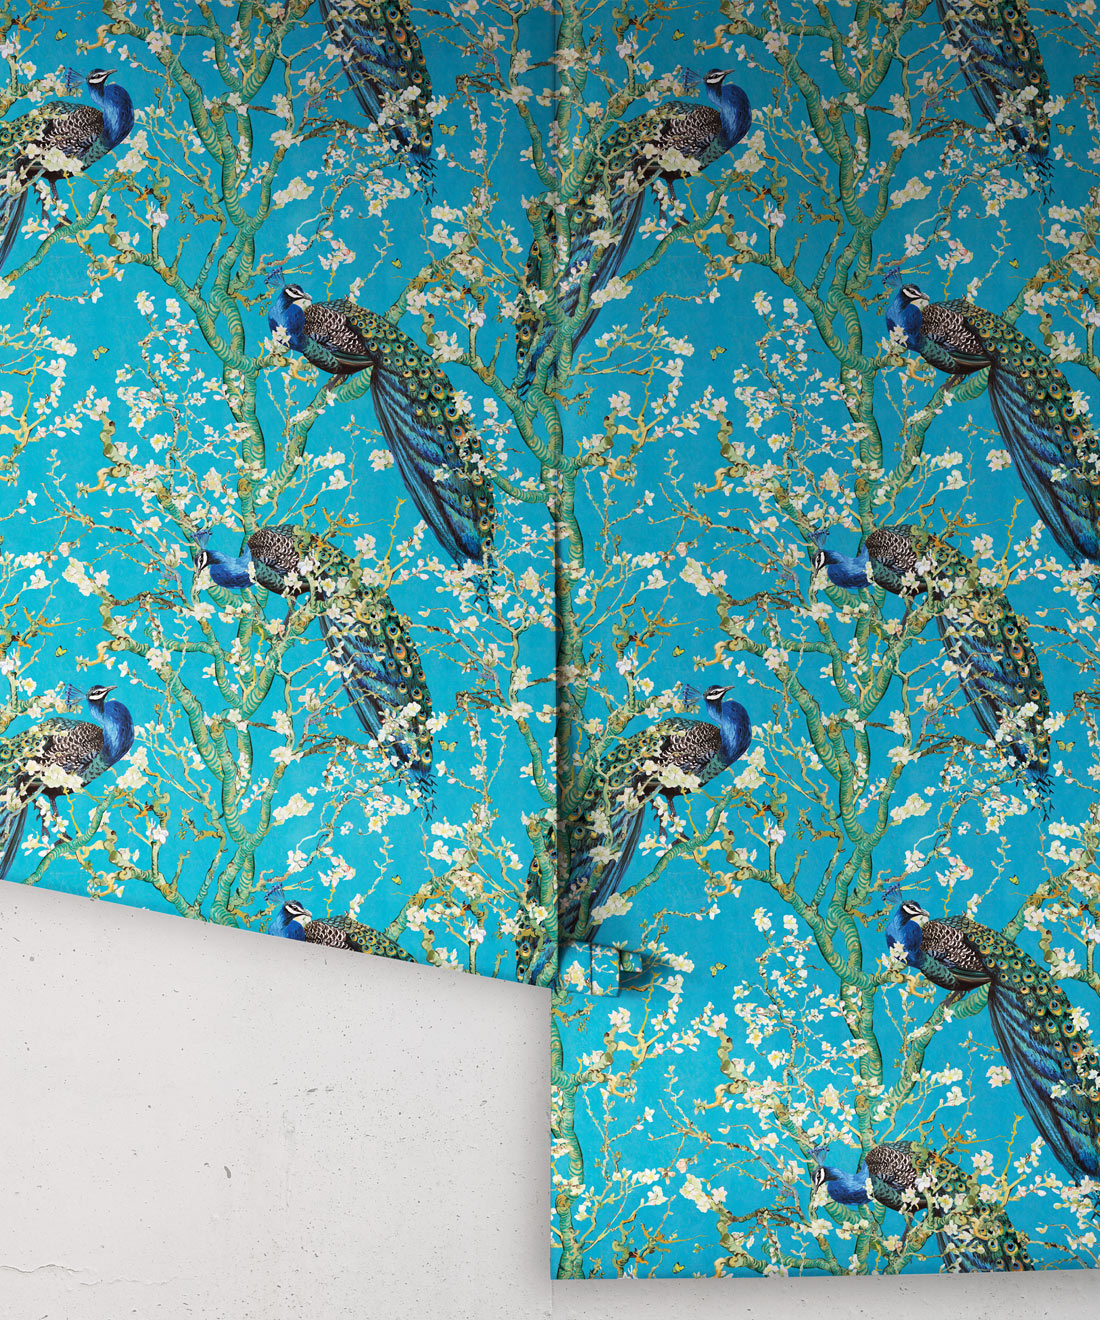 Almond Blossom Wallpaper • Chinoiserie Wallpaper • Wallpaper with Peacocks • Light Blue Duck Egg Wallpaper • Rolls